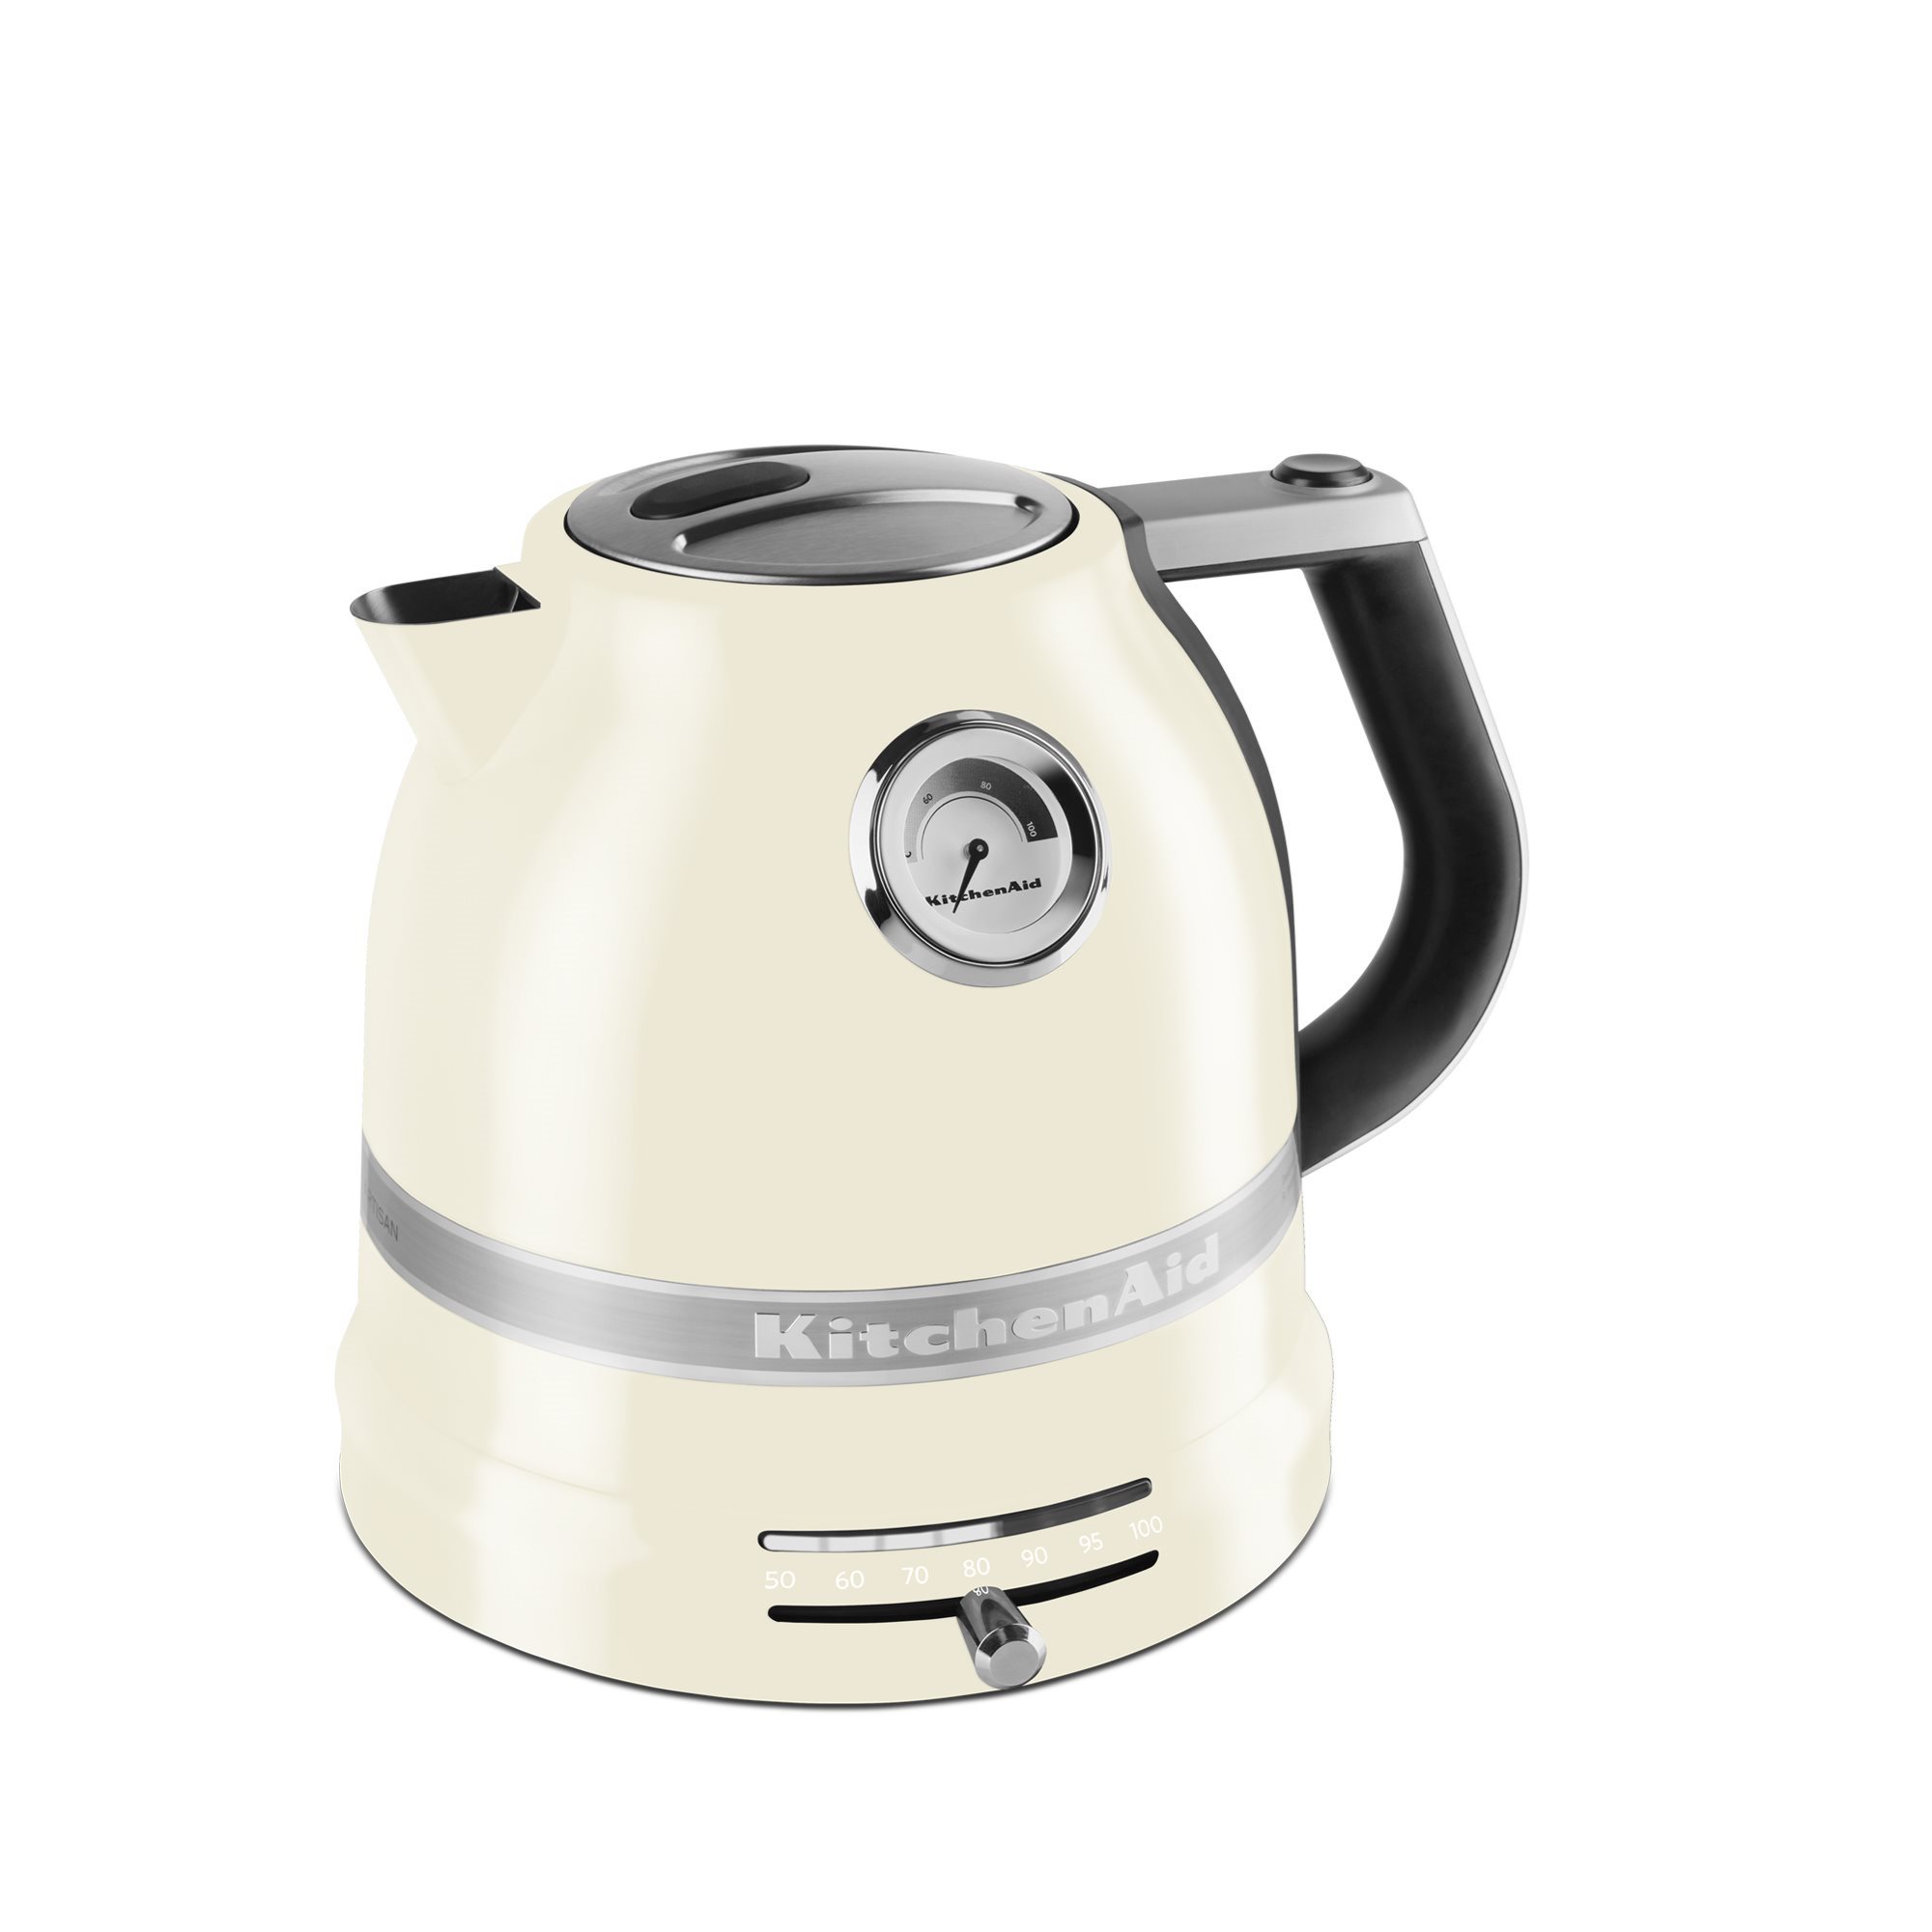 Electric kettle, 2400 W, Artisan 1.5L, Pistachio color - KitchenAid brand